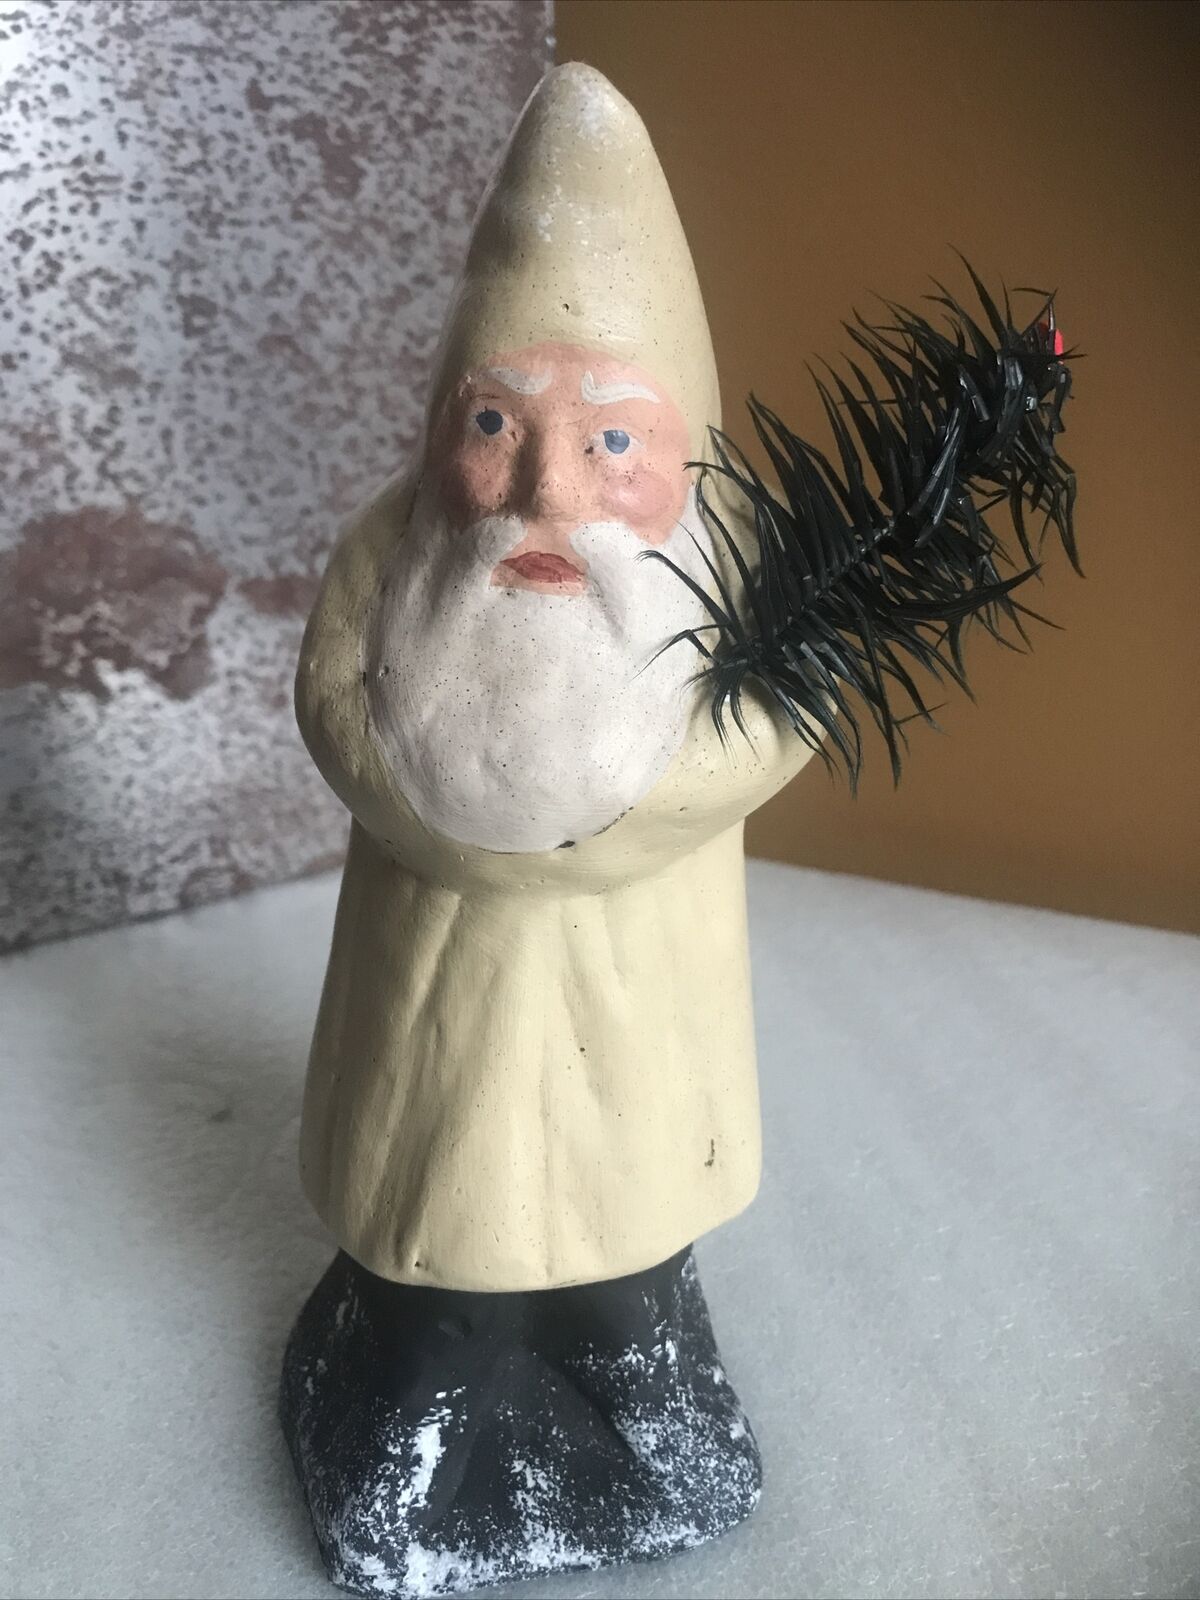 Primitive Vintage Belsnickle Santa Claus Figurine w/ Tree Folk Art Holiday 7.5”